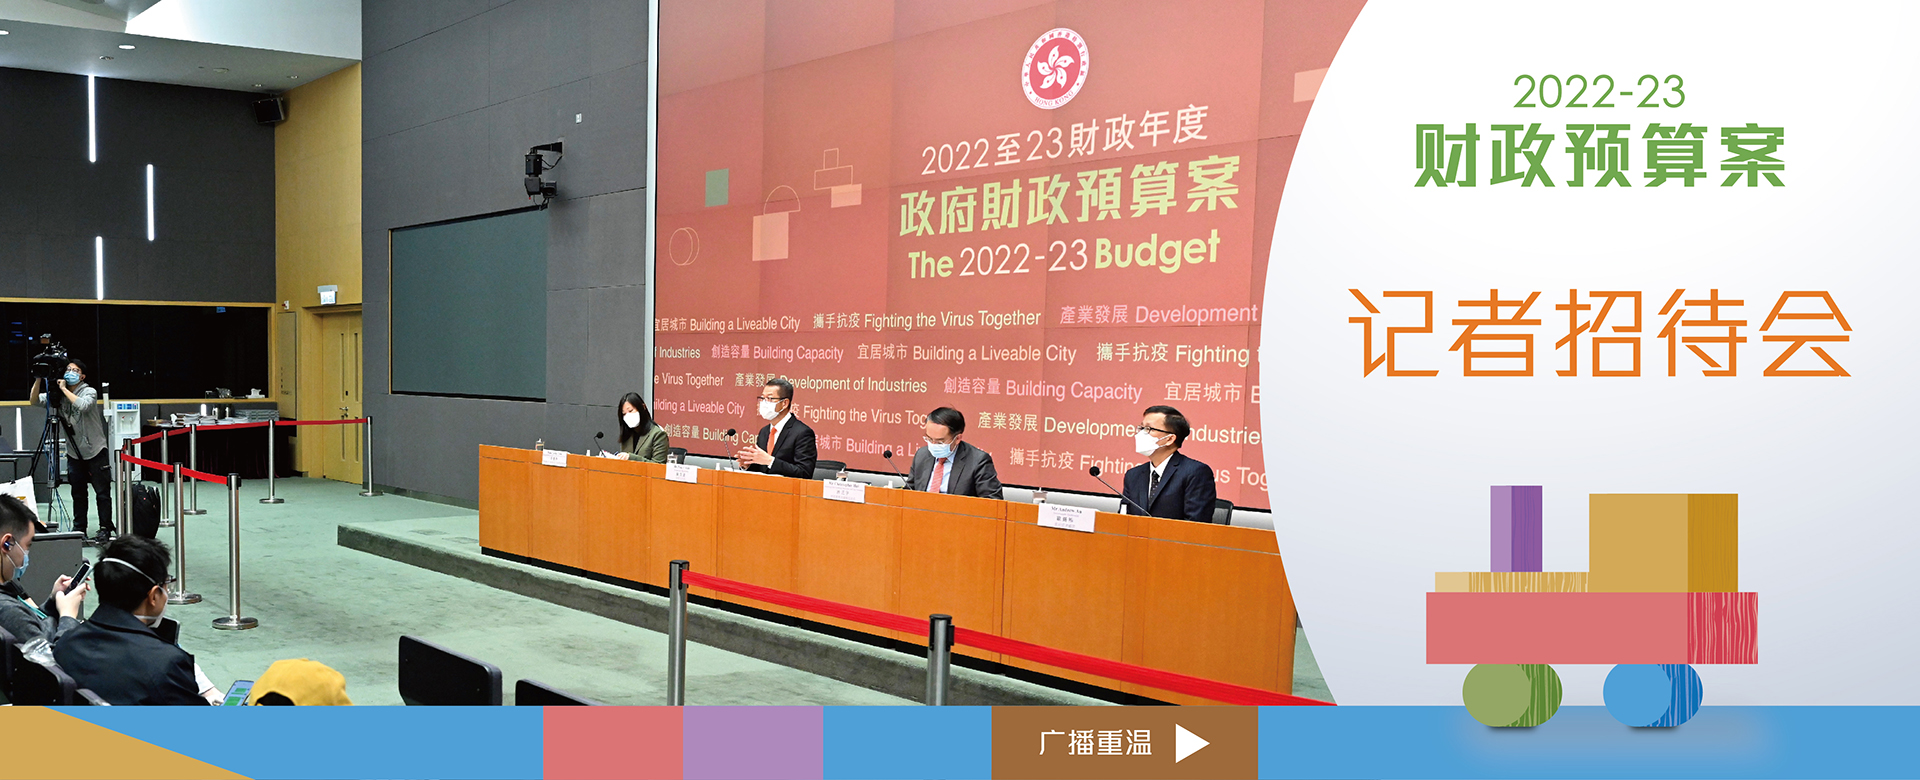 2022-23财政预算案记者会广播重温